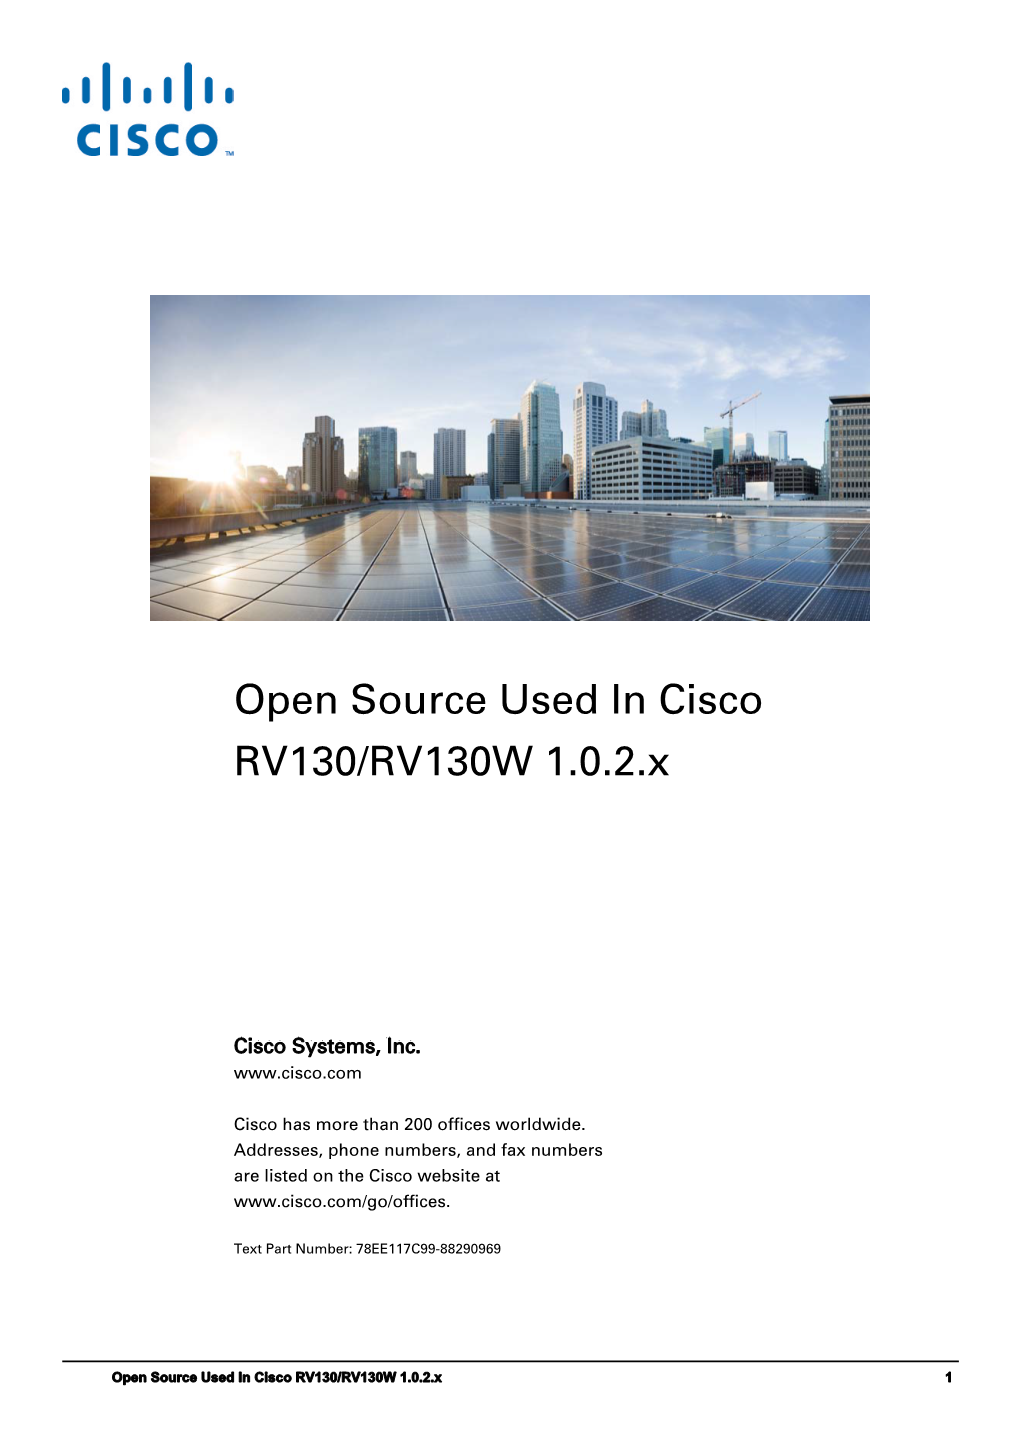 Open Source Used in Cisco RV130/RV130W Firmware Version